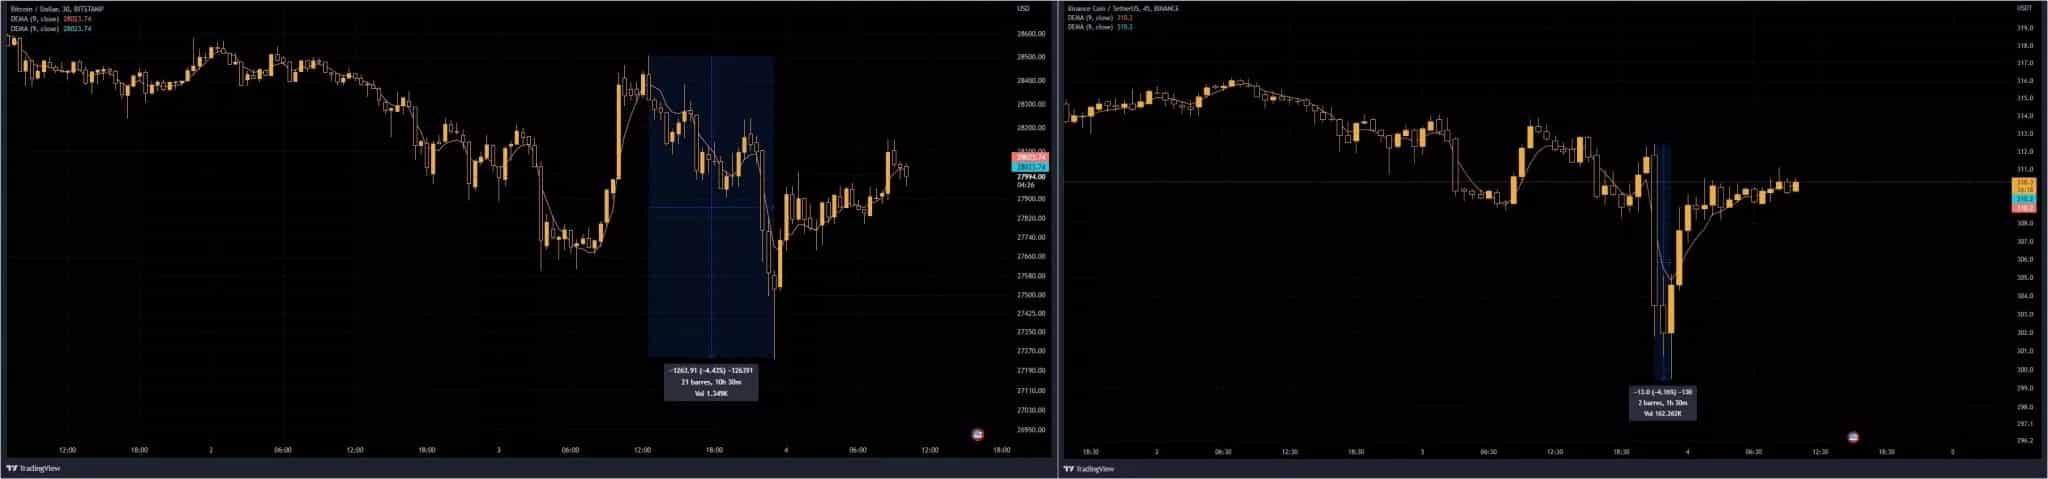 Abbildung 1 - Kurse von Bitcoin (links) und BNB (rechts)